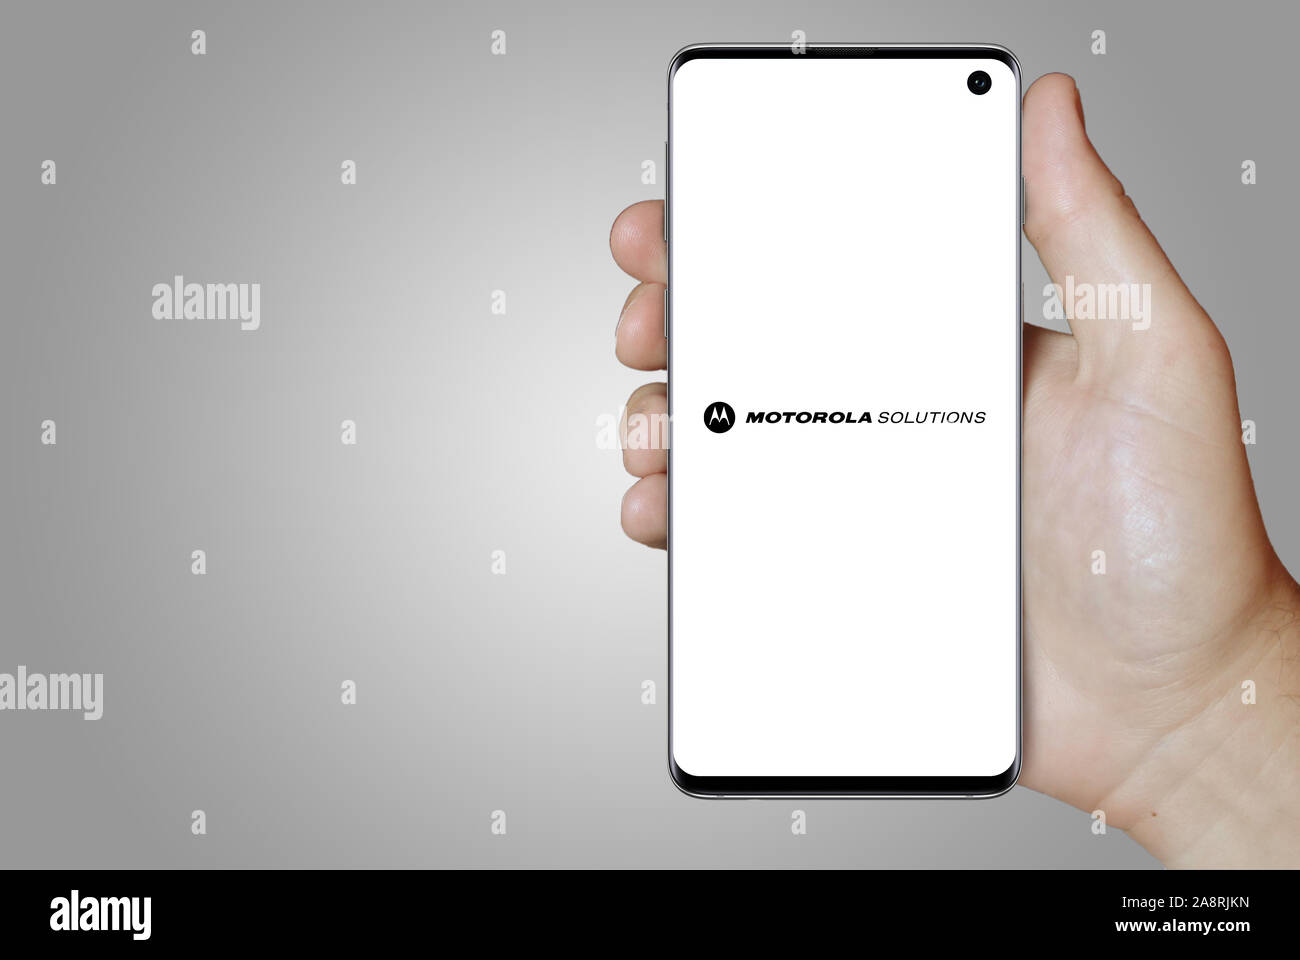 Il logo della società pubblica le soluzioni Motorola Inc. visualizzata su uno smartphone. Sfondo grigio. Credito: PIXDUCE Foto Stock